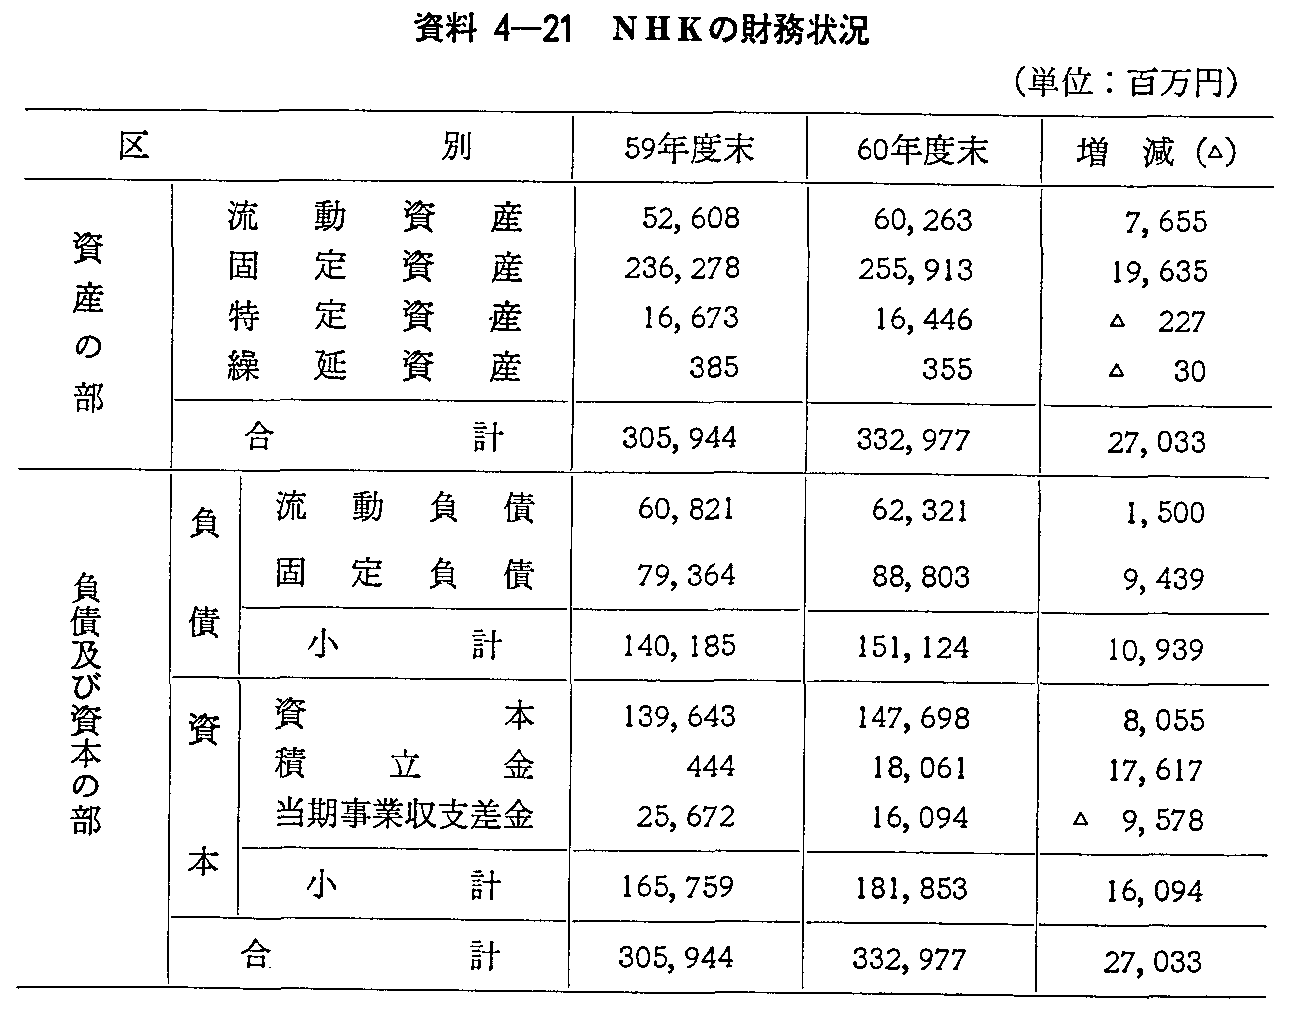 資料4-21 NHKの財務状況